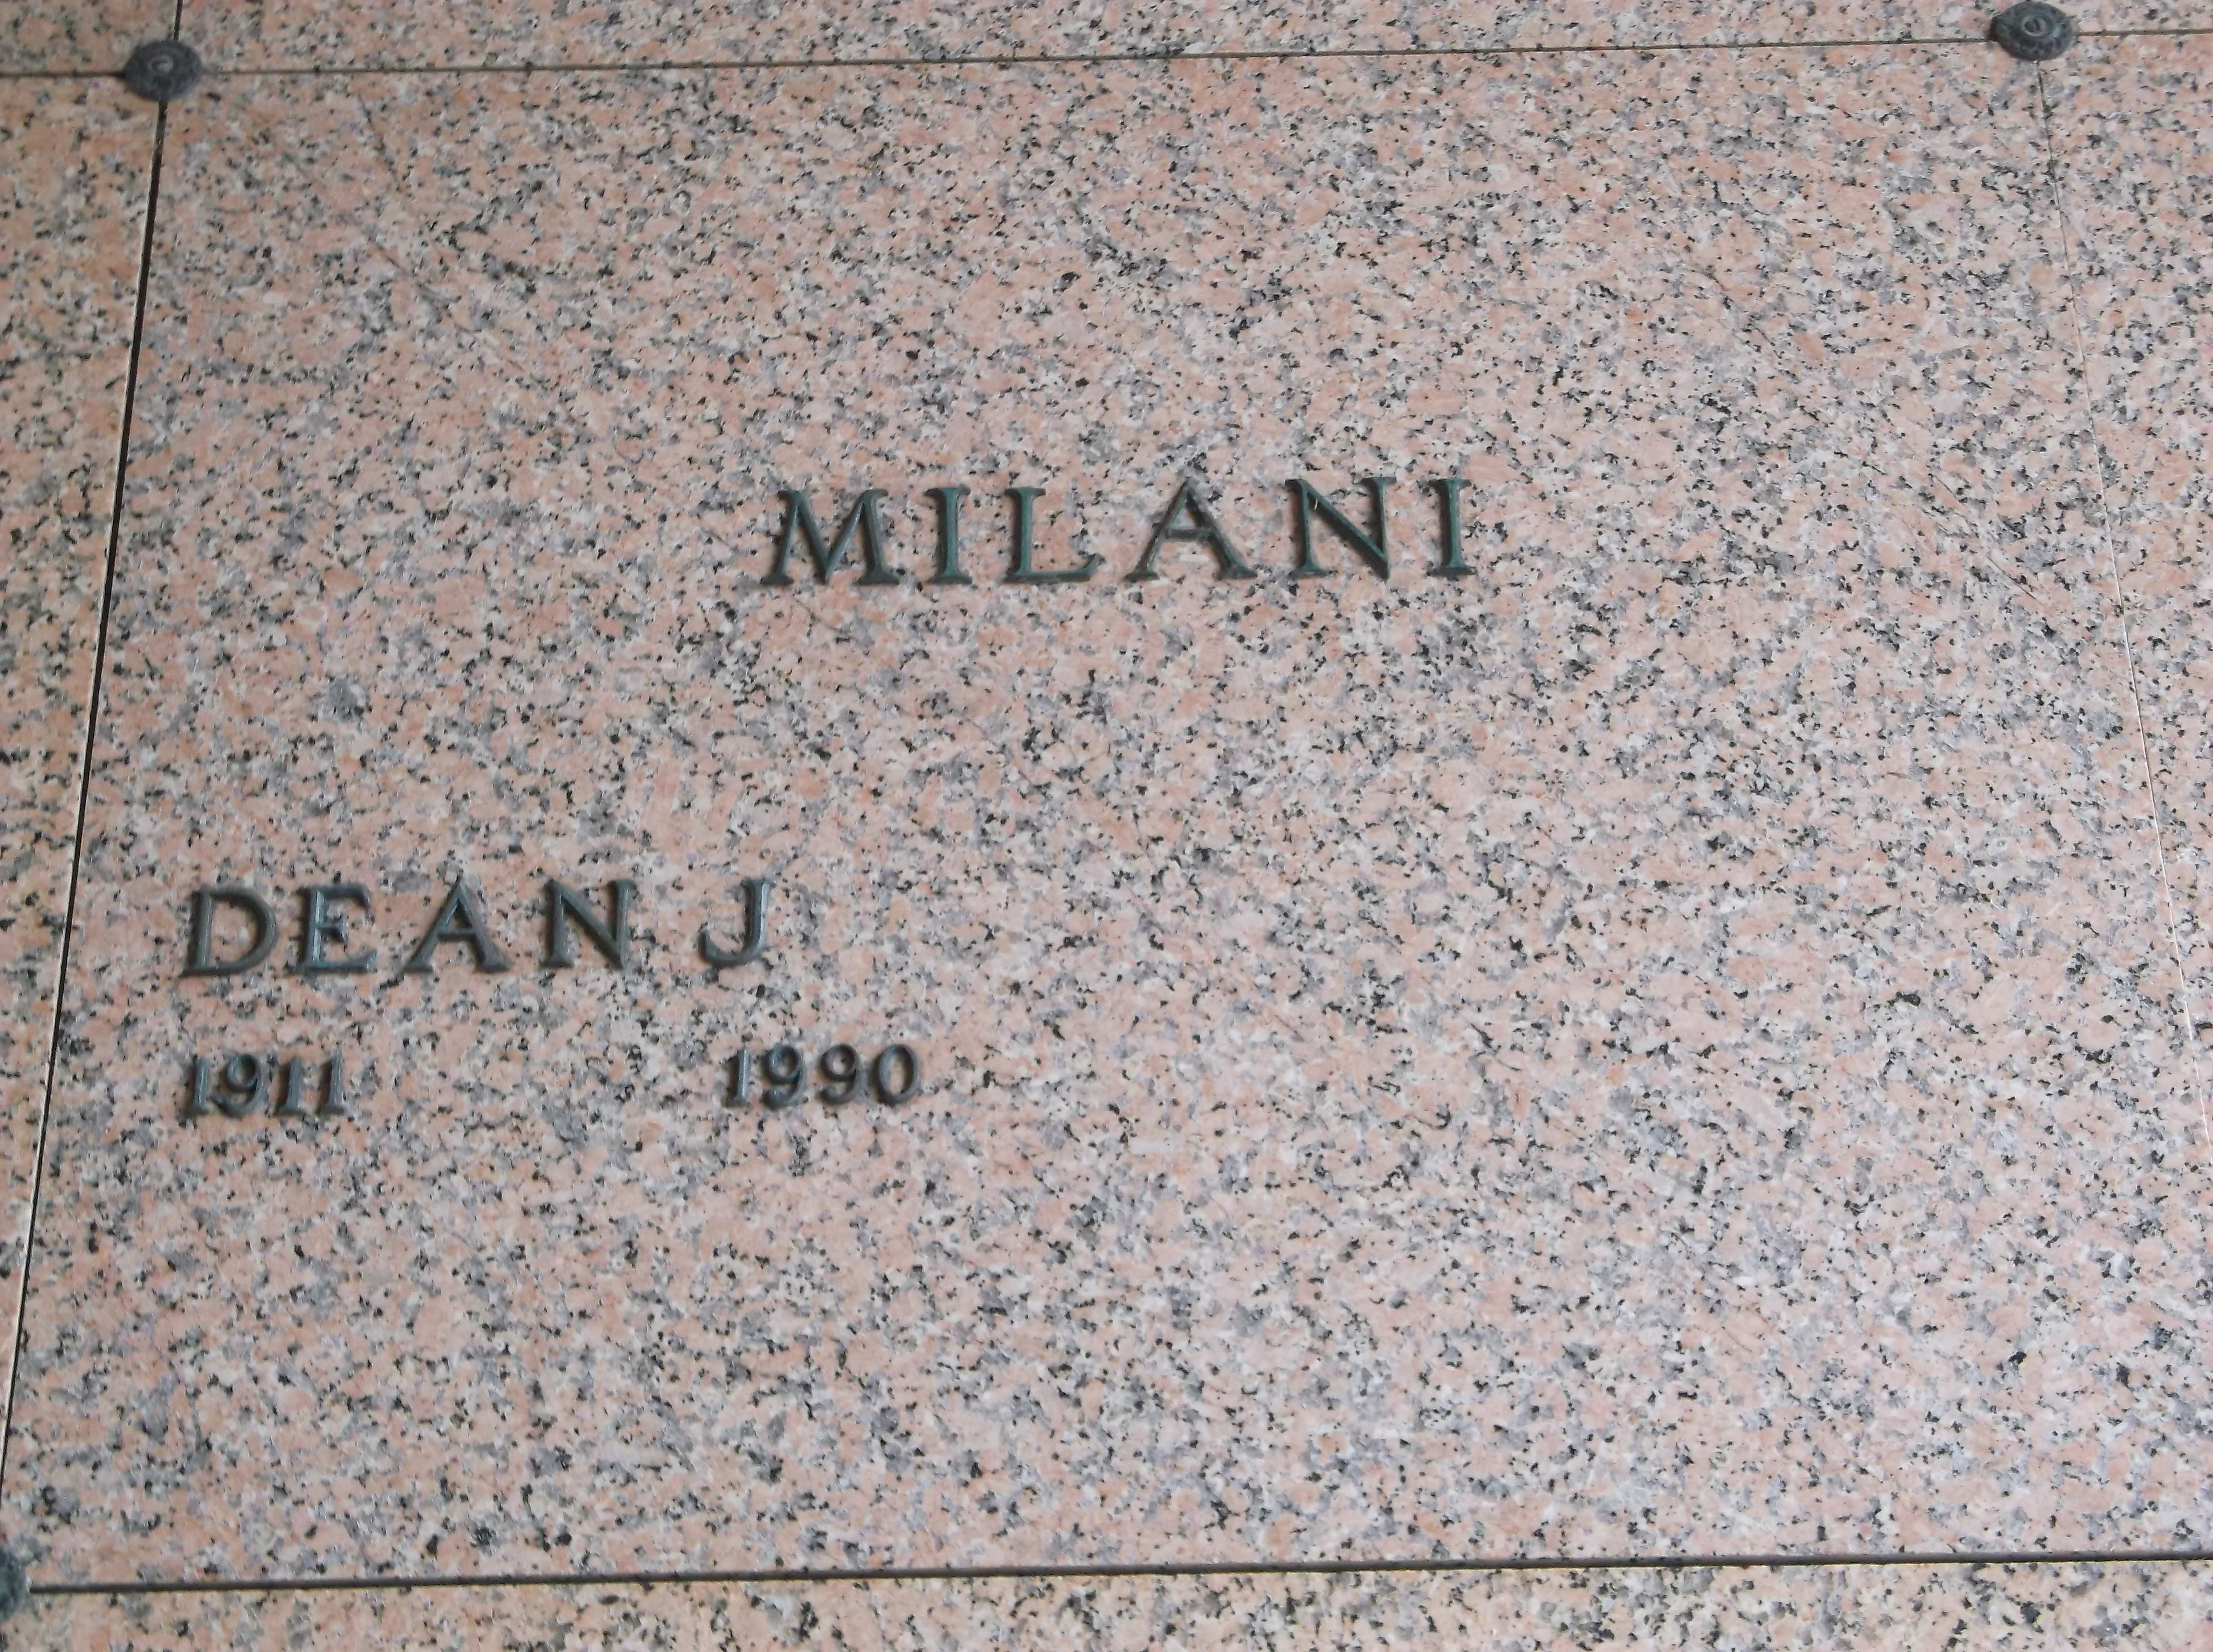 Dean J Milani